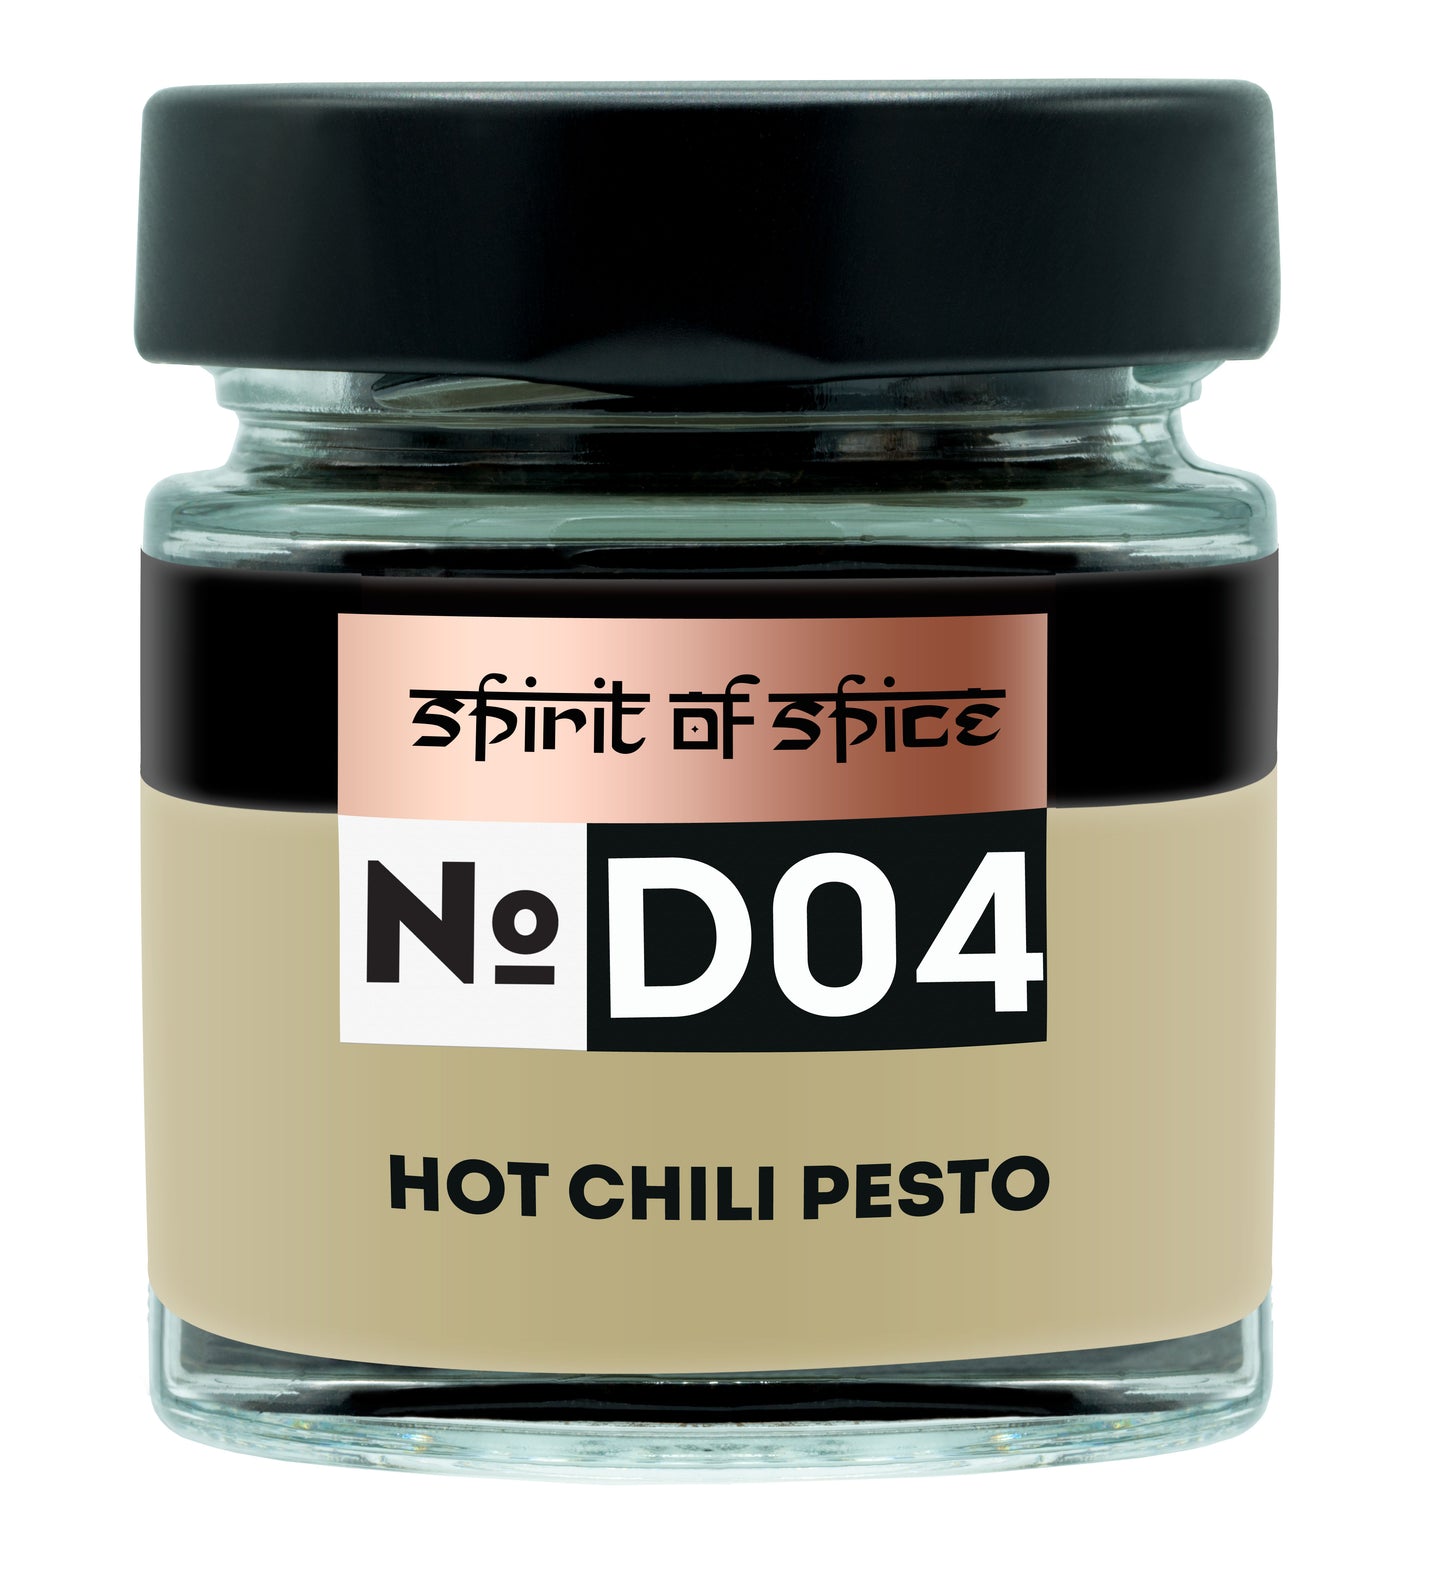 Gewürzmischung 'Hot Chili Pesto'